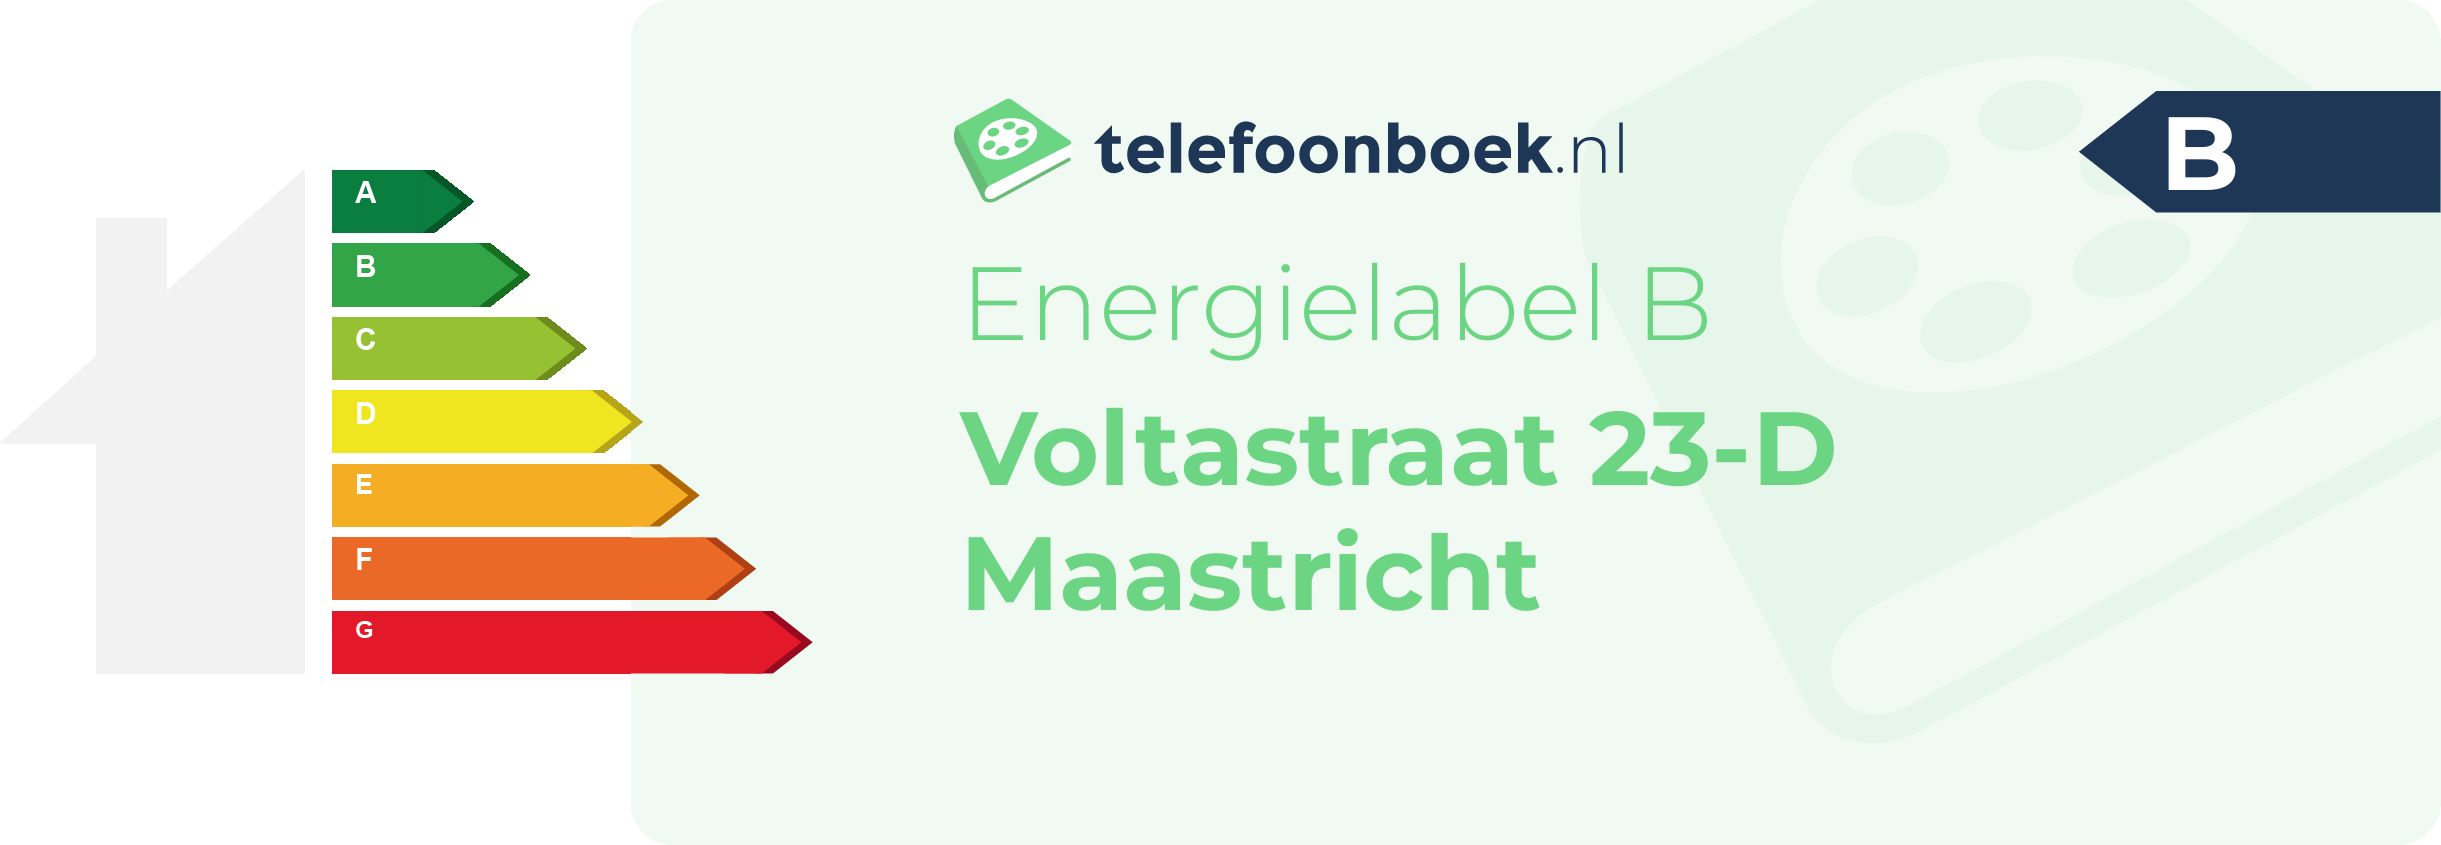 Energielabel Voltastraat 23-D Maastricht